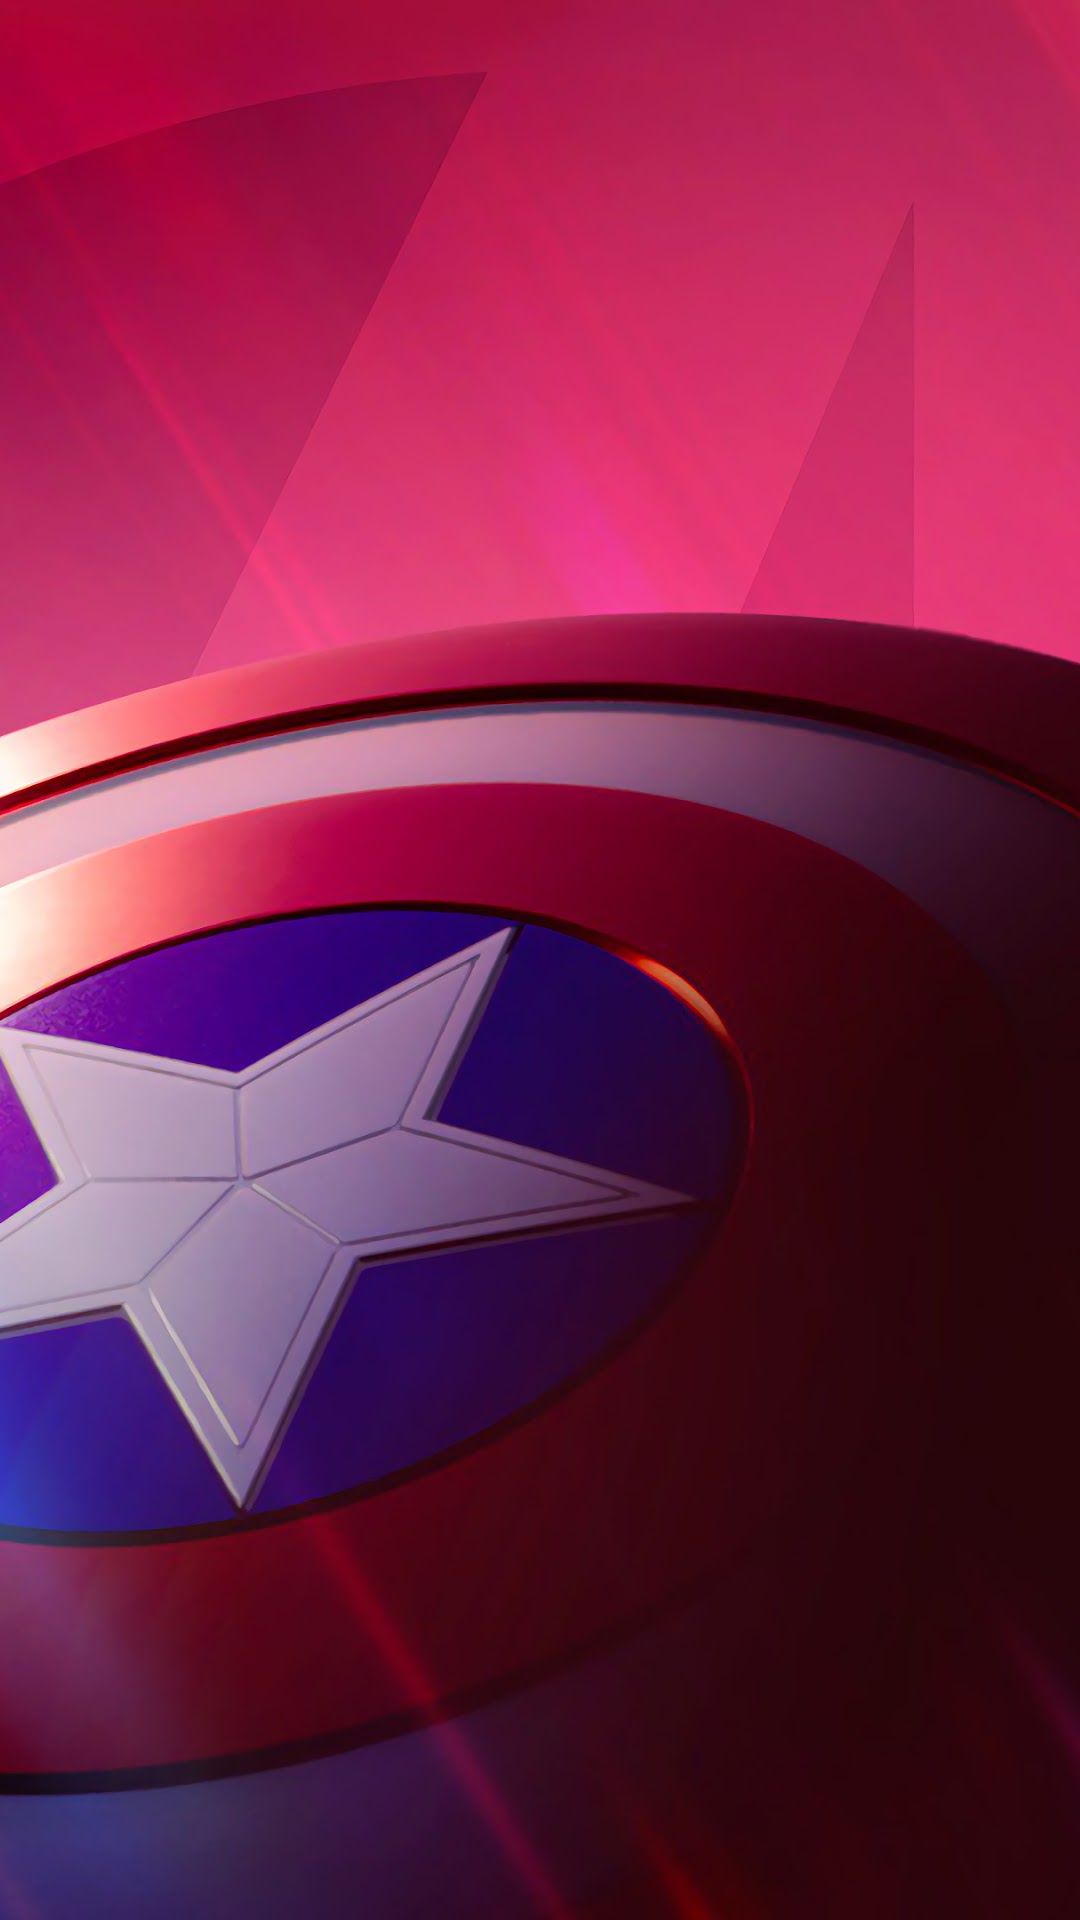 Fortnite X Avengers, Brite Bomber, Captain America Shield